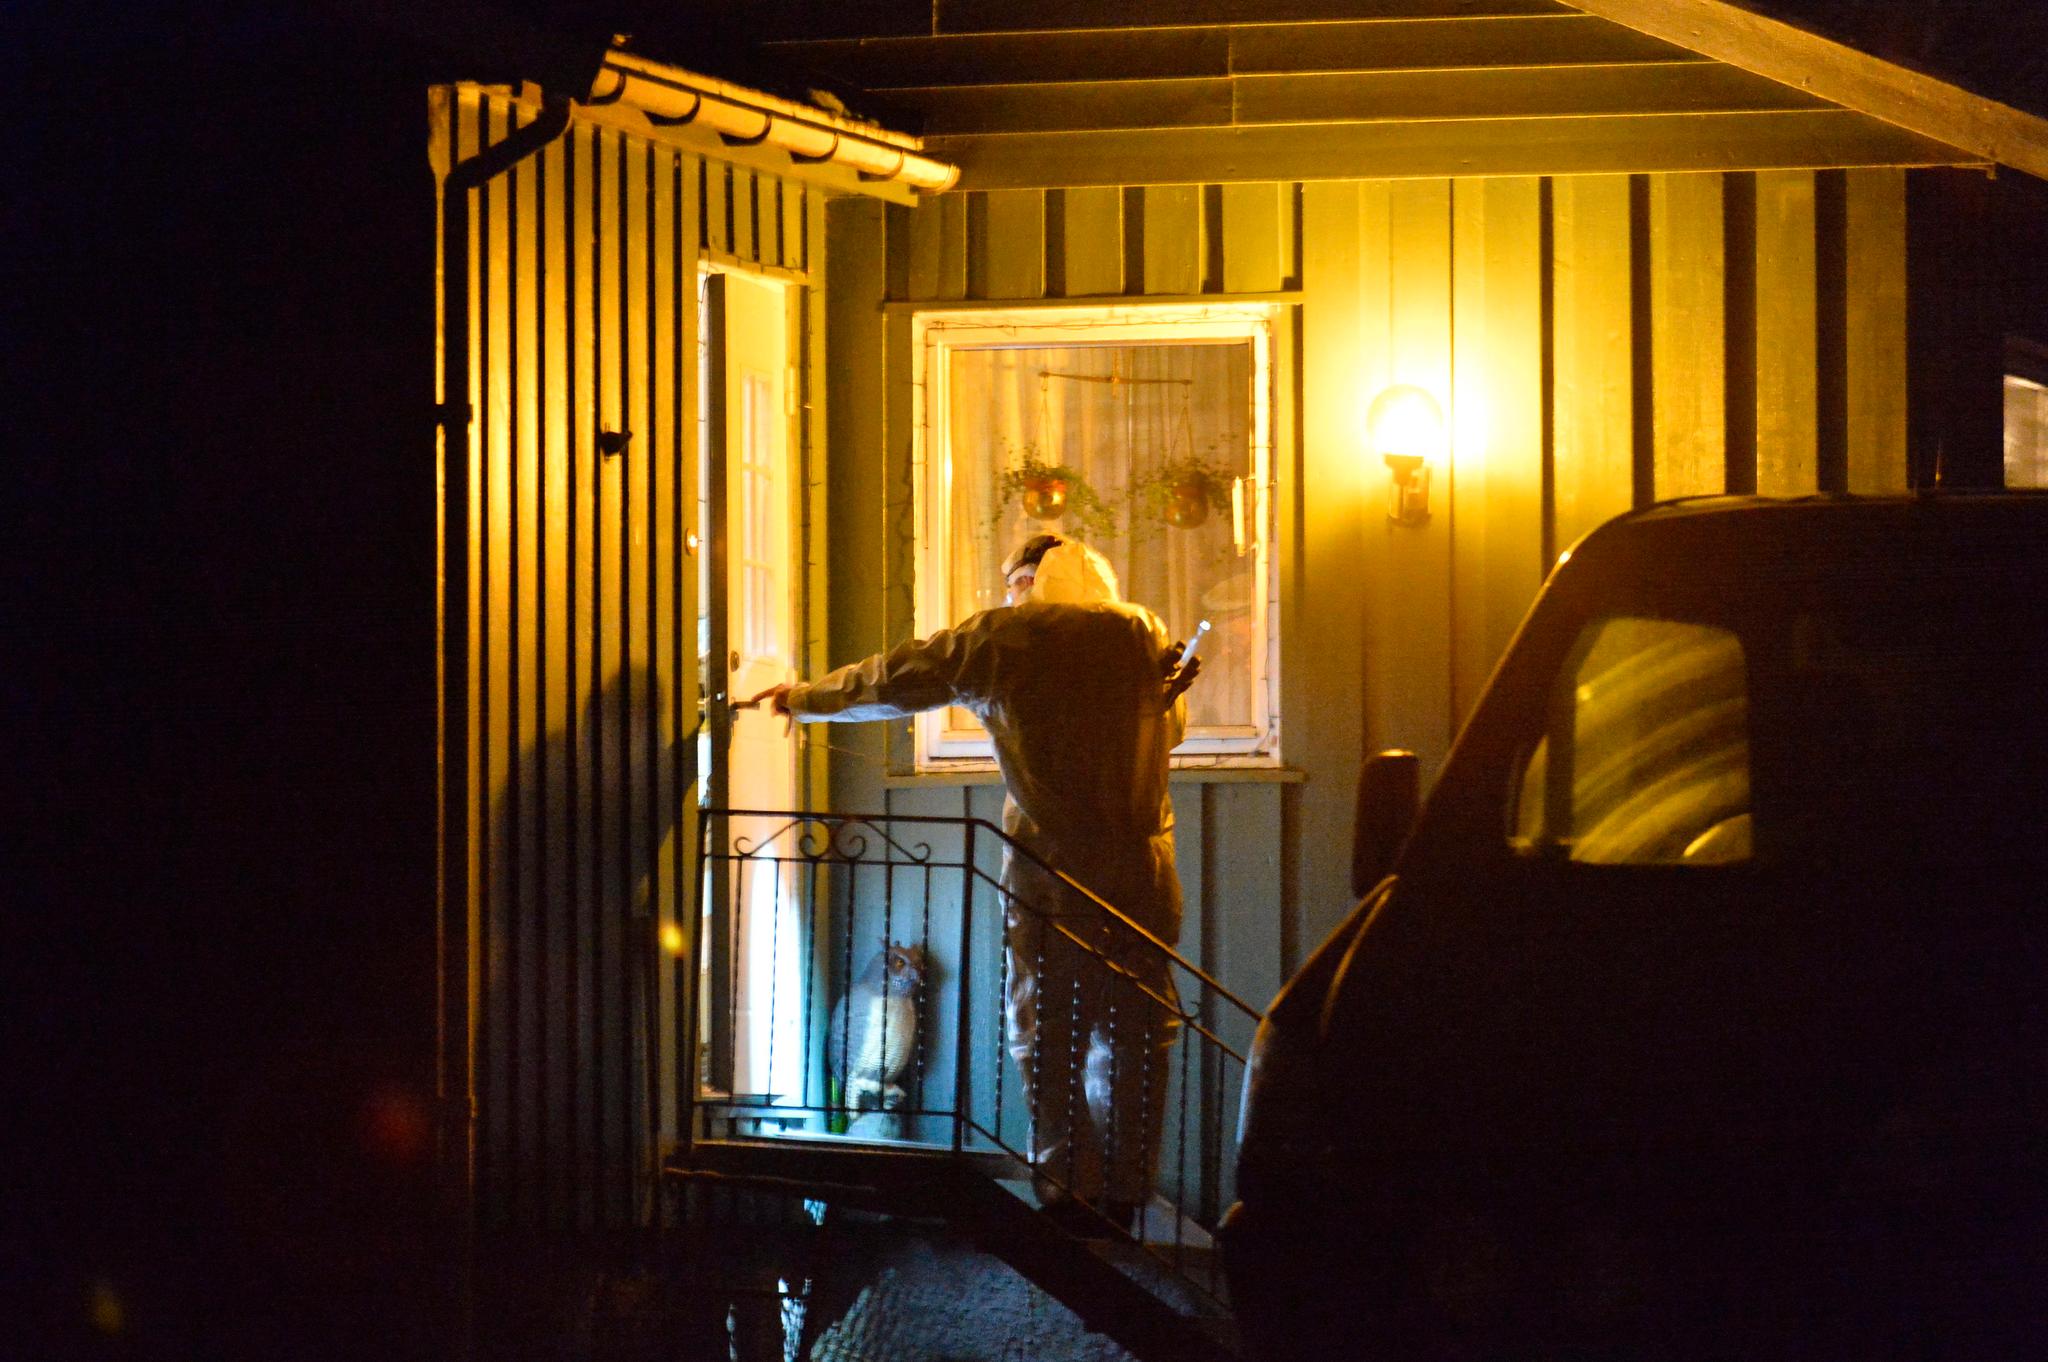 Politiet i Trøndelag fikk onsdag klokken 12.58 melding om at en livløs person var funnet i en bolig ved Ler i Melhus. Foto: Ned Alley / NTB scanpix